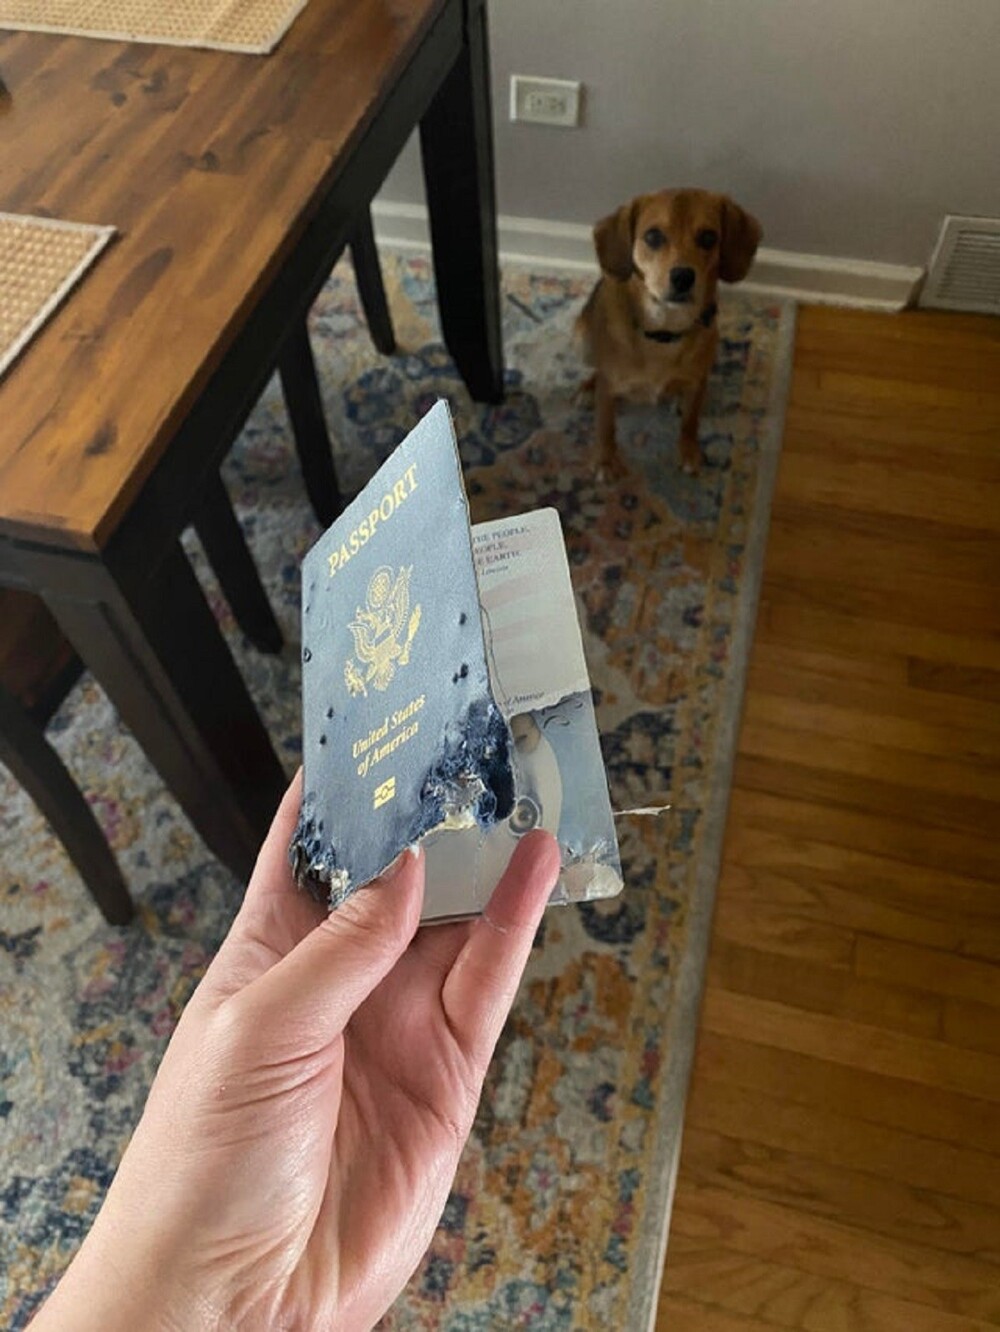 25. "Собака съела мой паспорт"